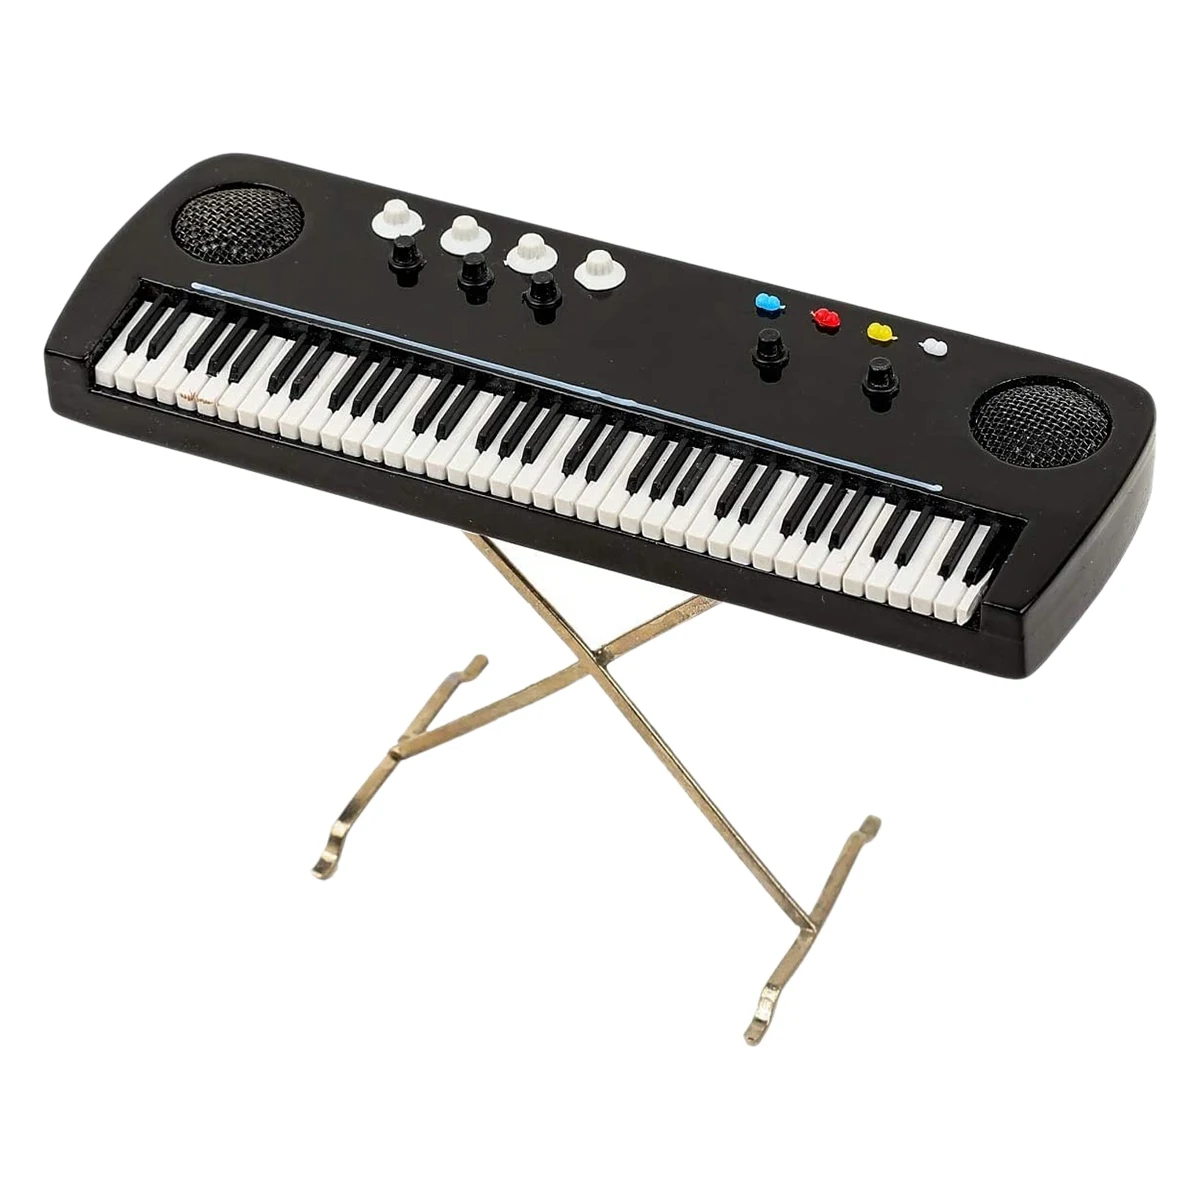 

Миниатюрный электронный орган, миниатюрный музыкальный инструмент, мини электронная клавиатура с чехлом, миниатюрная модель кукольного домика с орнаментом